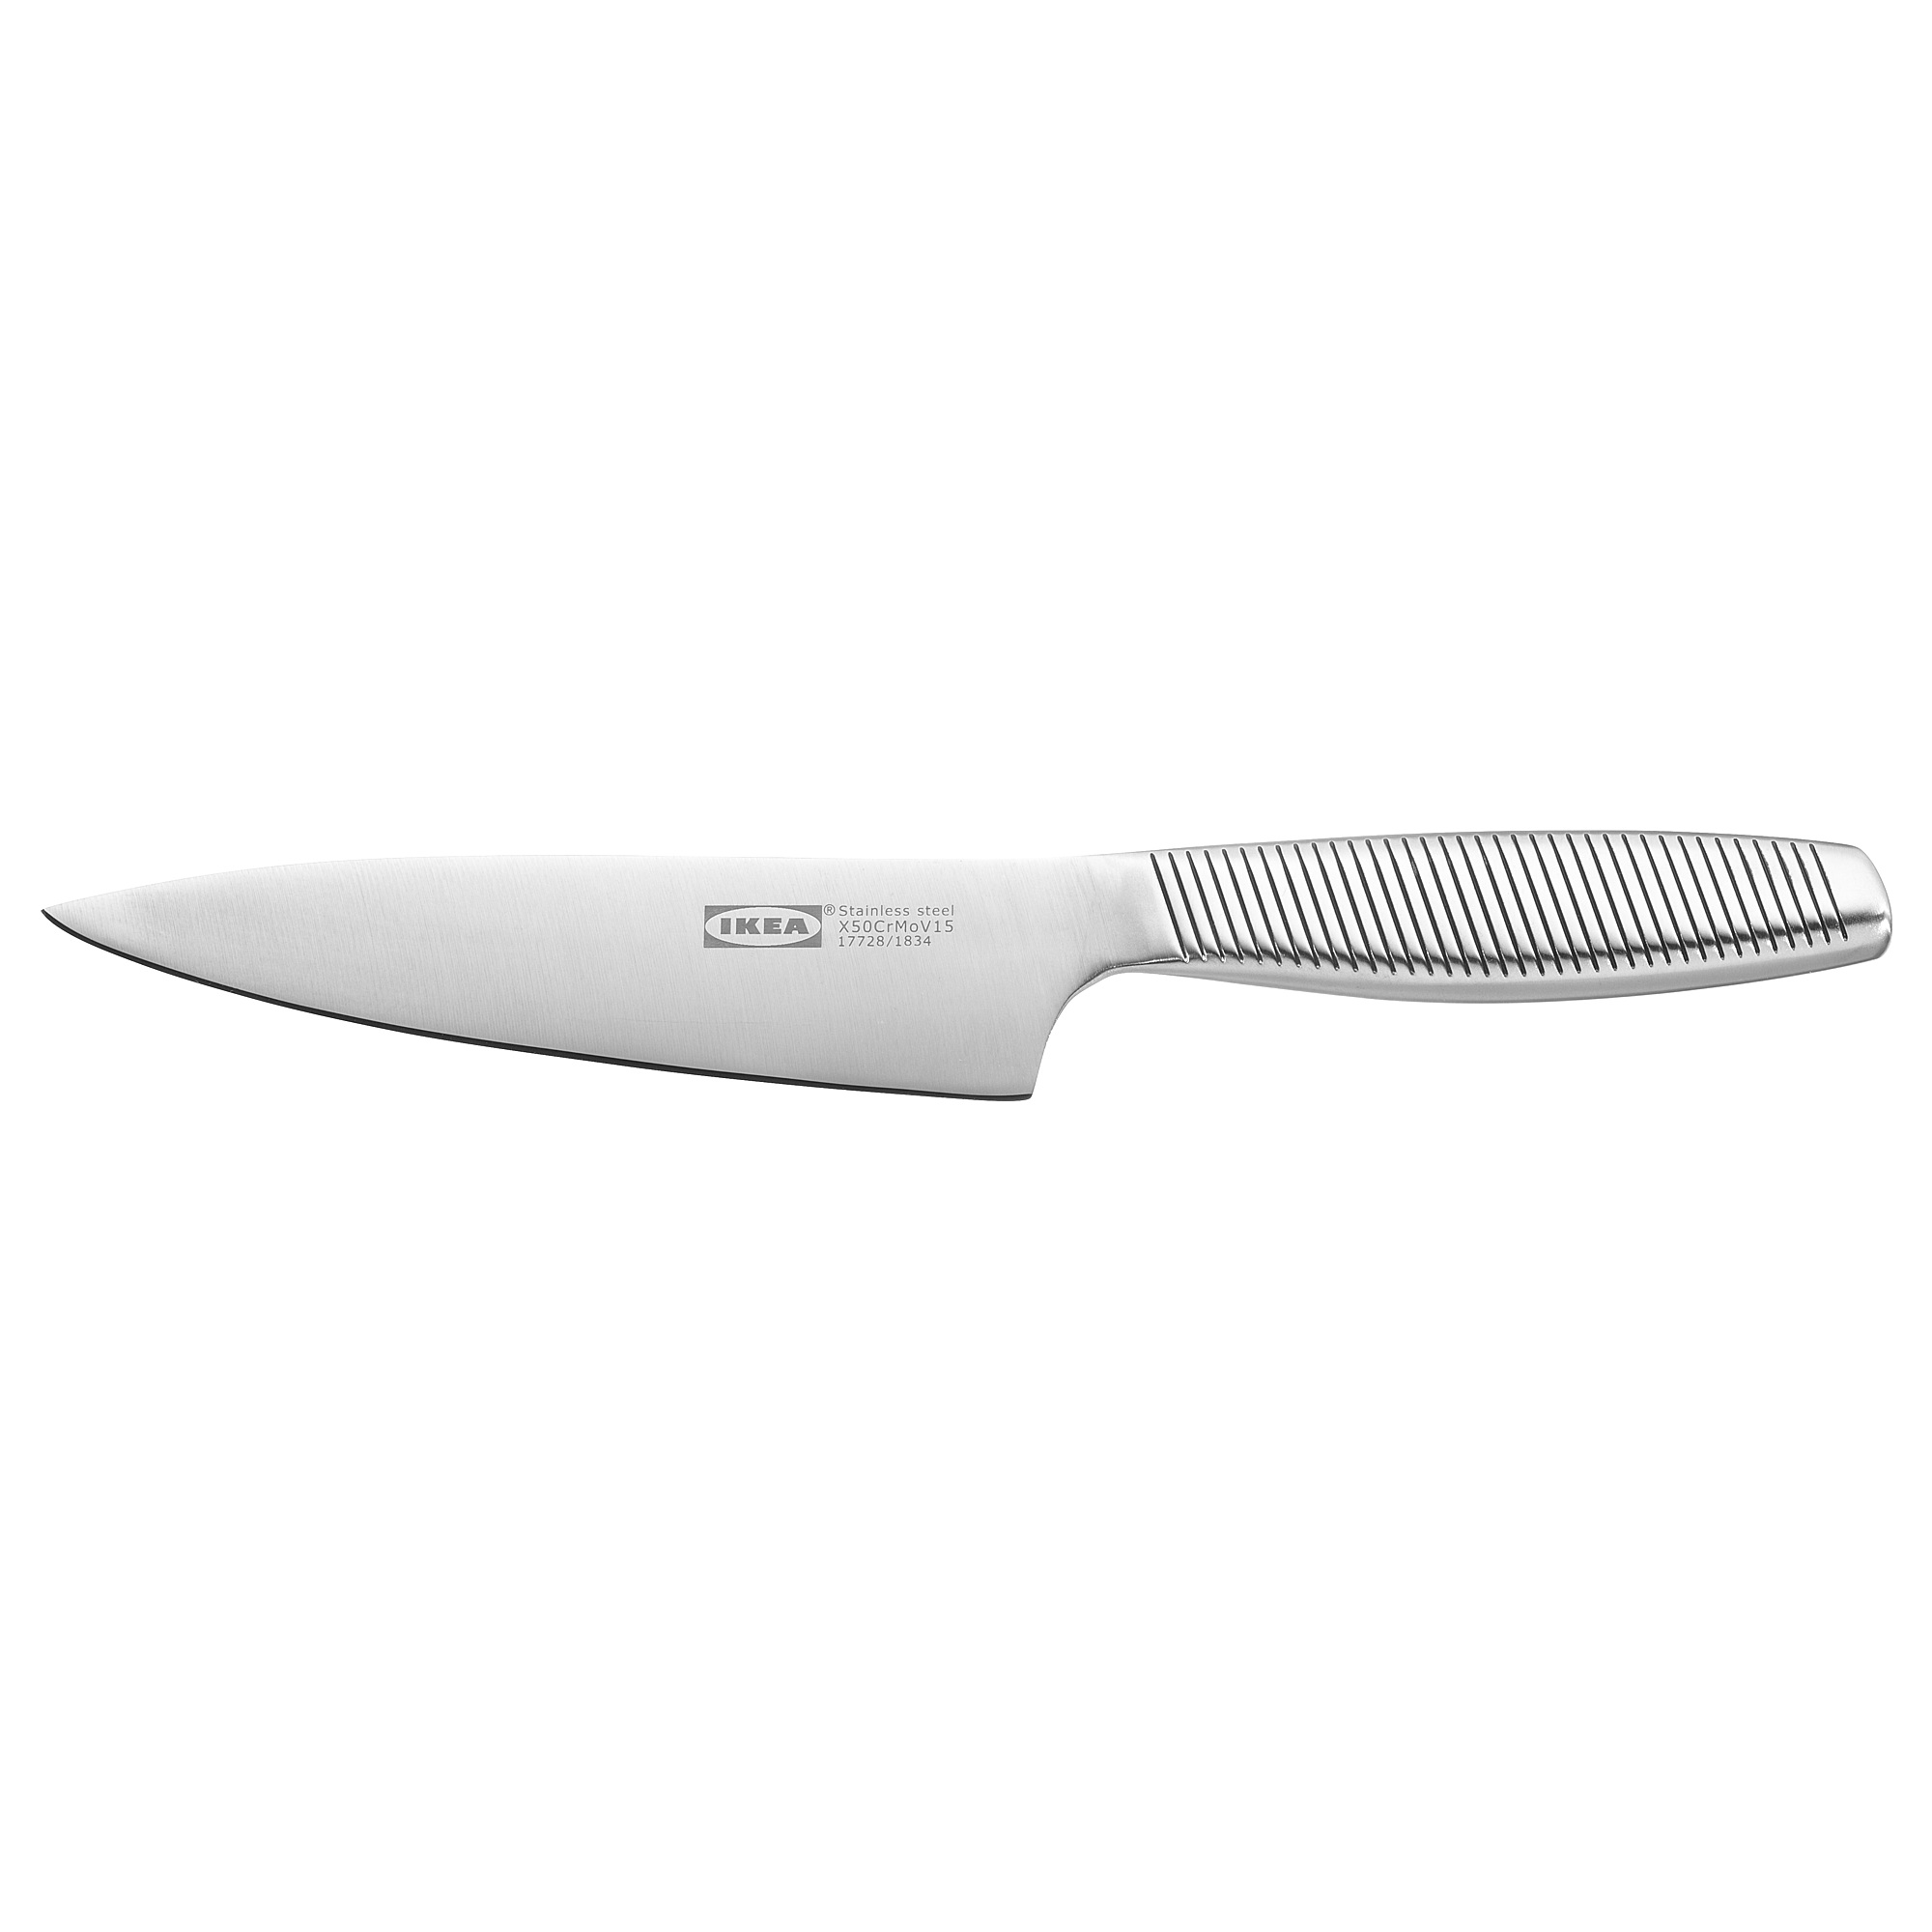 IKEA 365+ utility knife